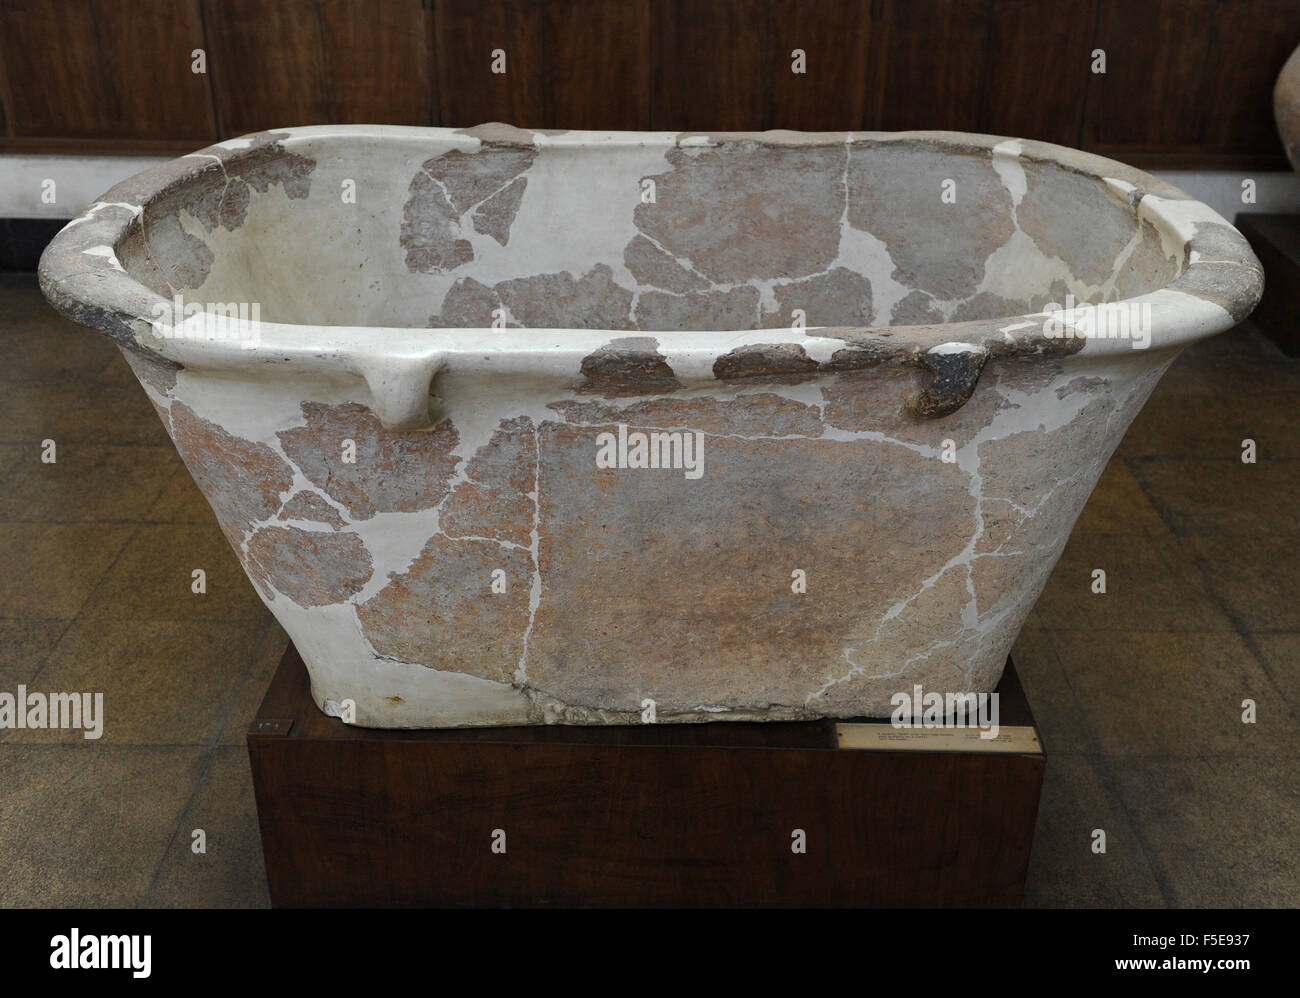 Una bañera de cerámica con cuatro asas bucle utilizado probablemente como un ataúd. Dígale Abu-Hawam. Museo Arqueológico Rockefeller. Jerusalén. Israel. Foto de stock